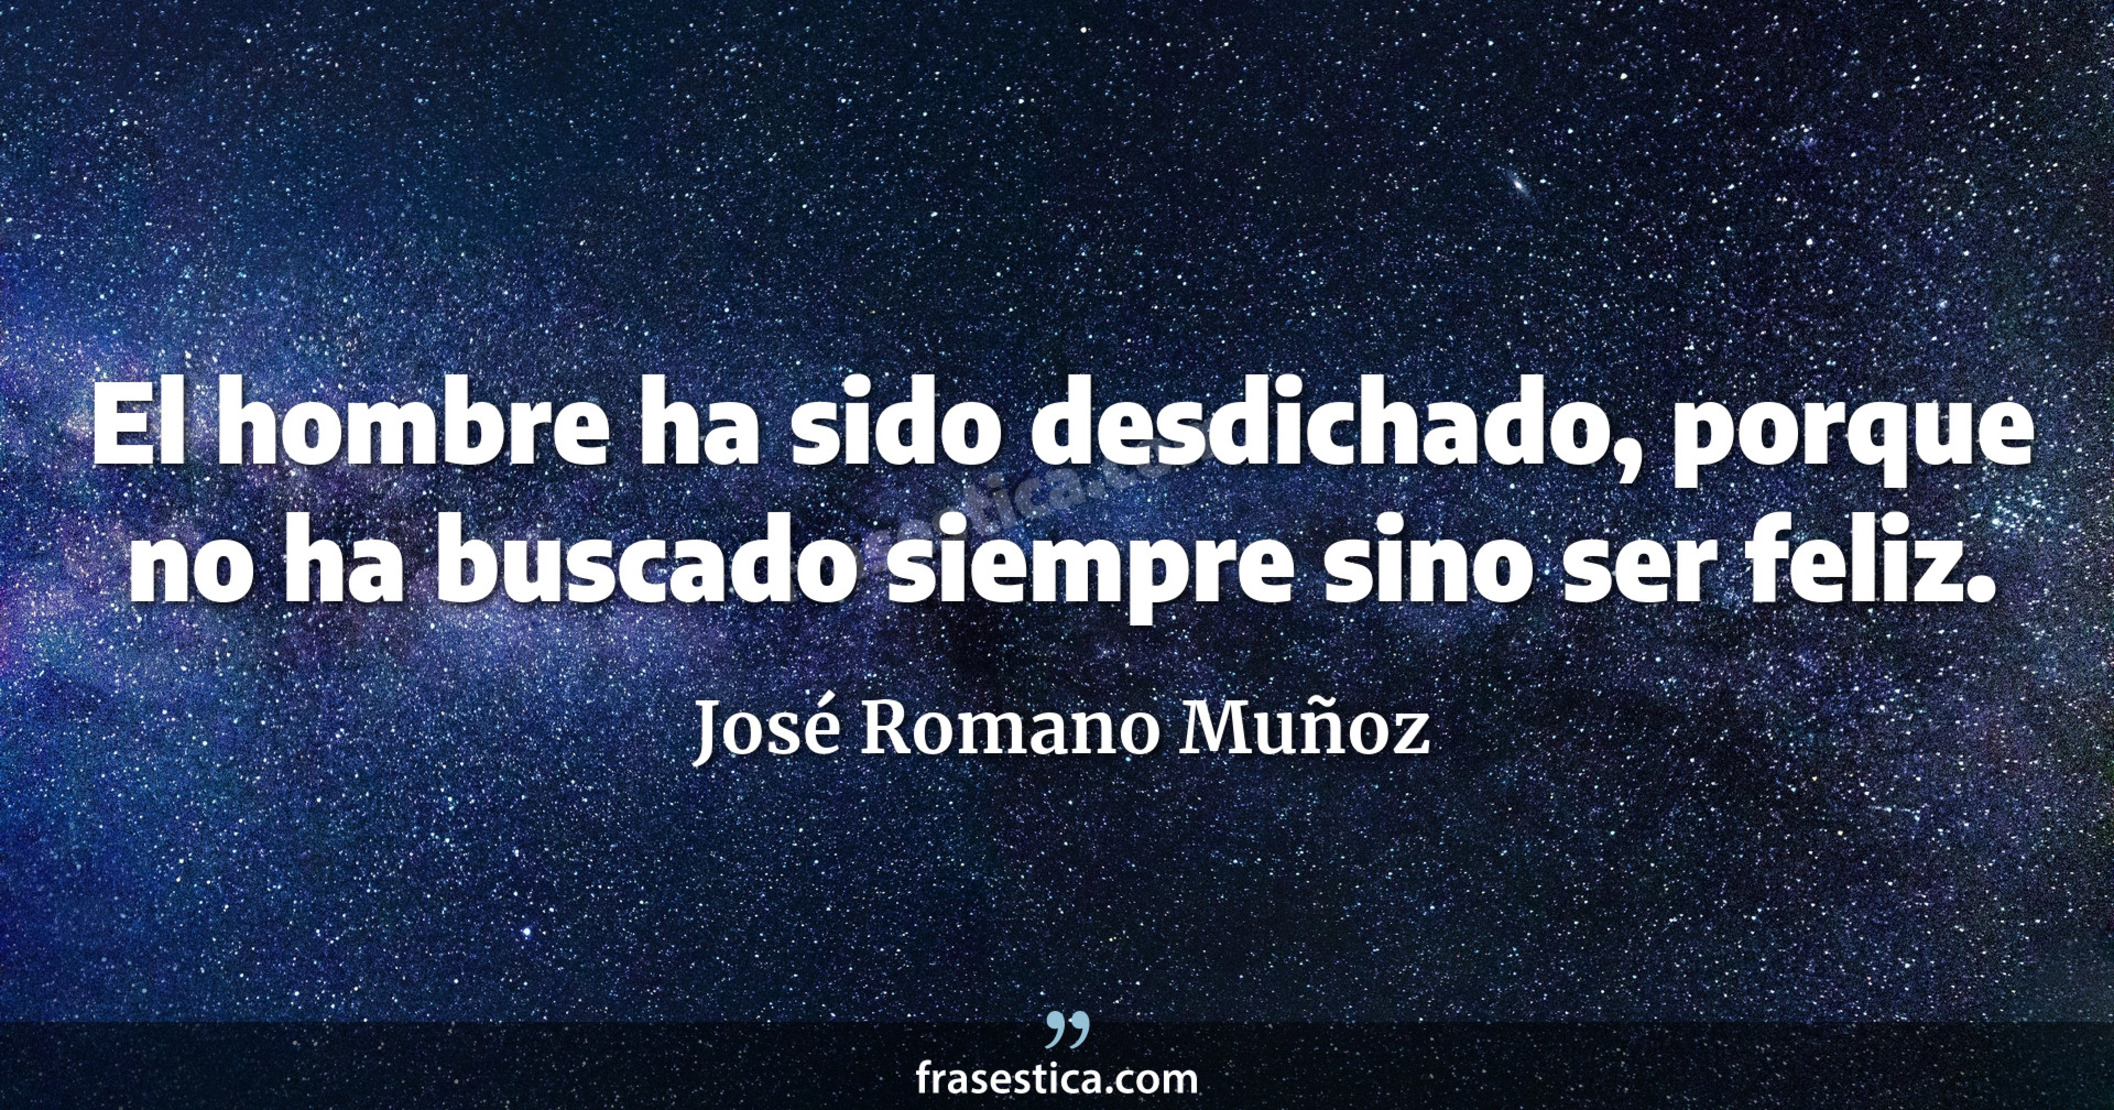 El hombre ha sido desdichado, porque no ha buscado siempre sino ser feliz. - José Romano Muñoz